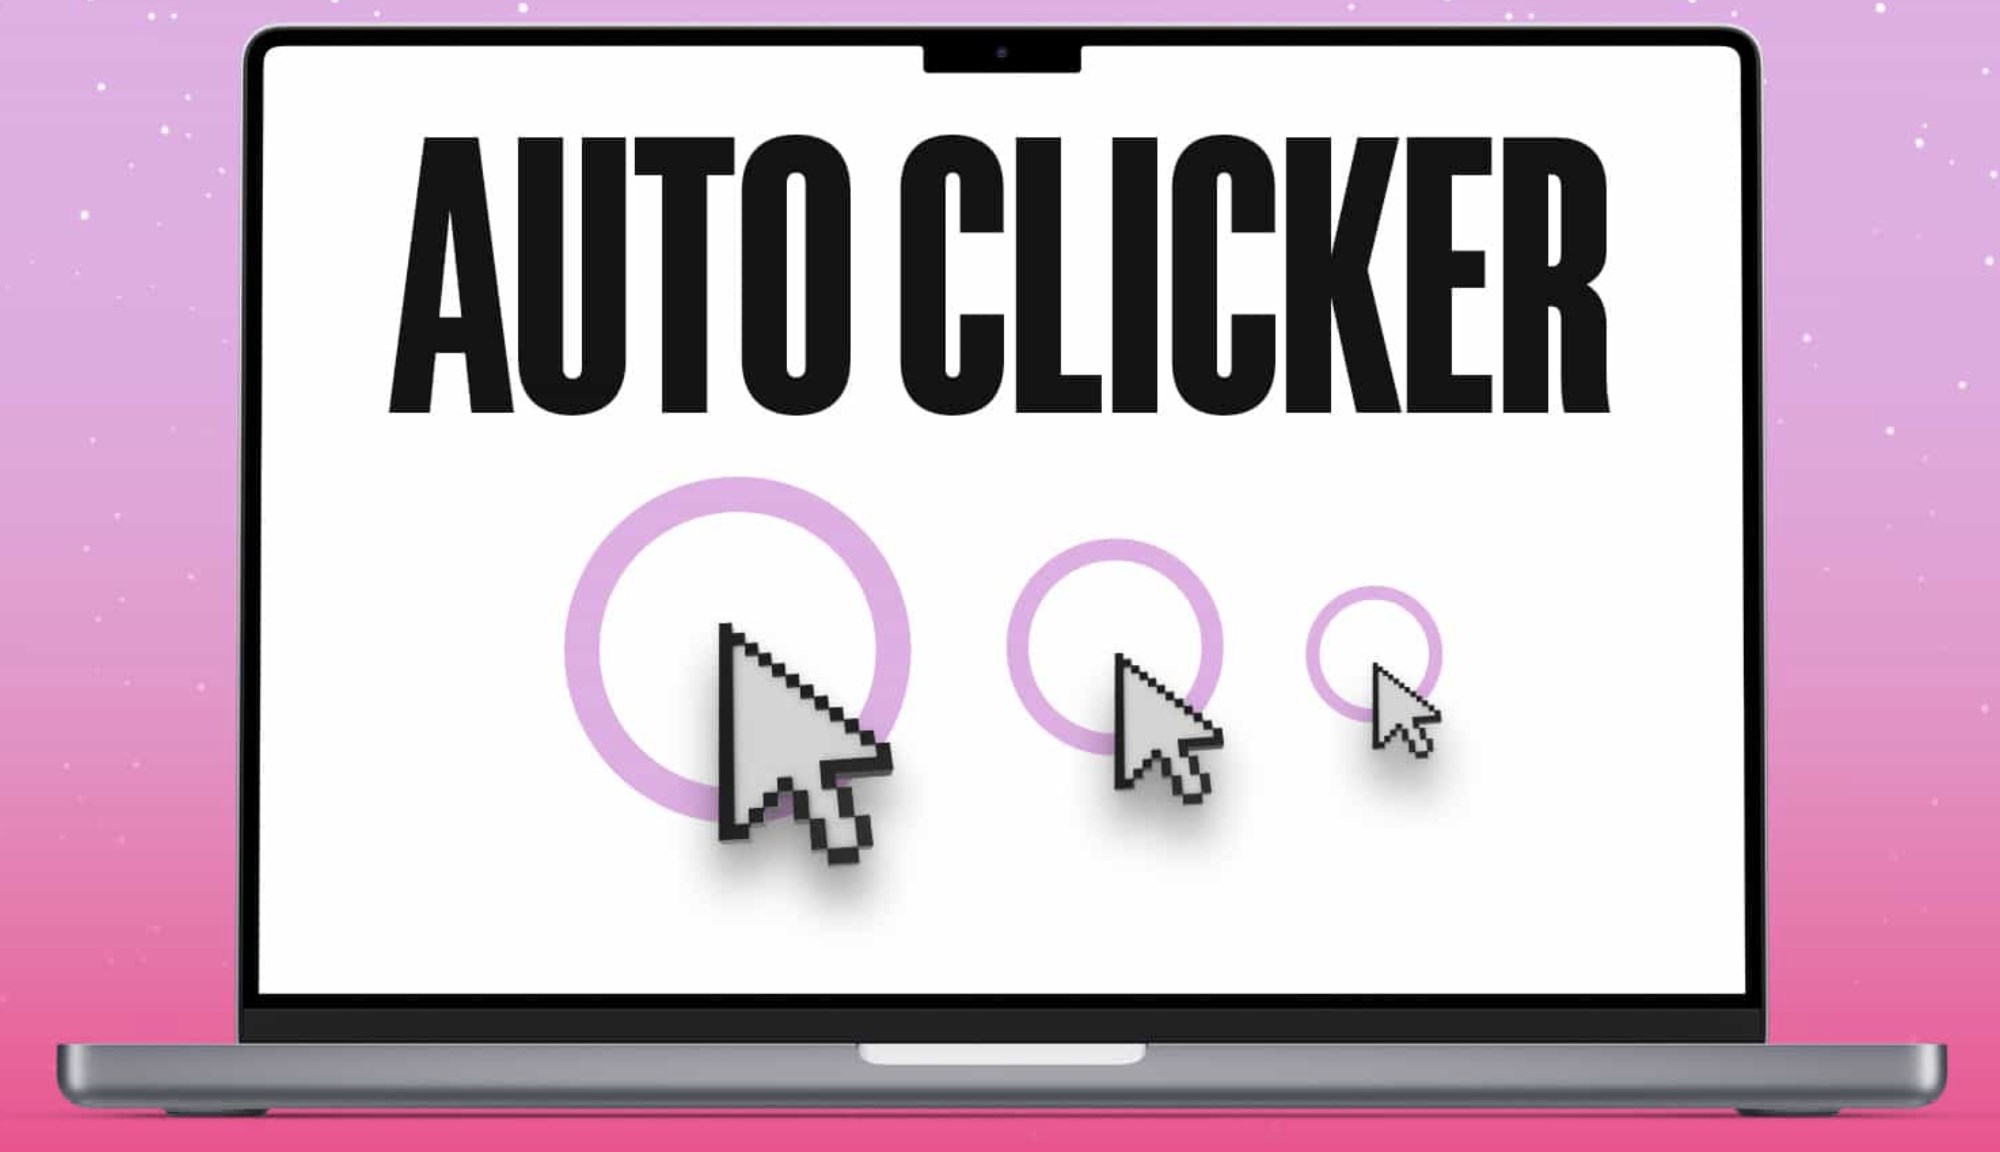 Auto -tecla Pressser - Clicker automático - Microsoft Apps